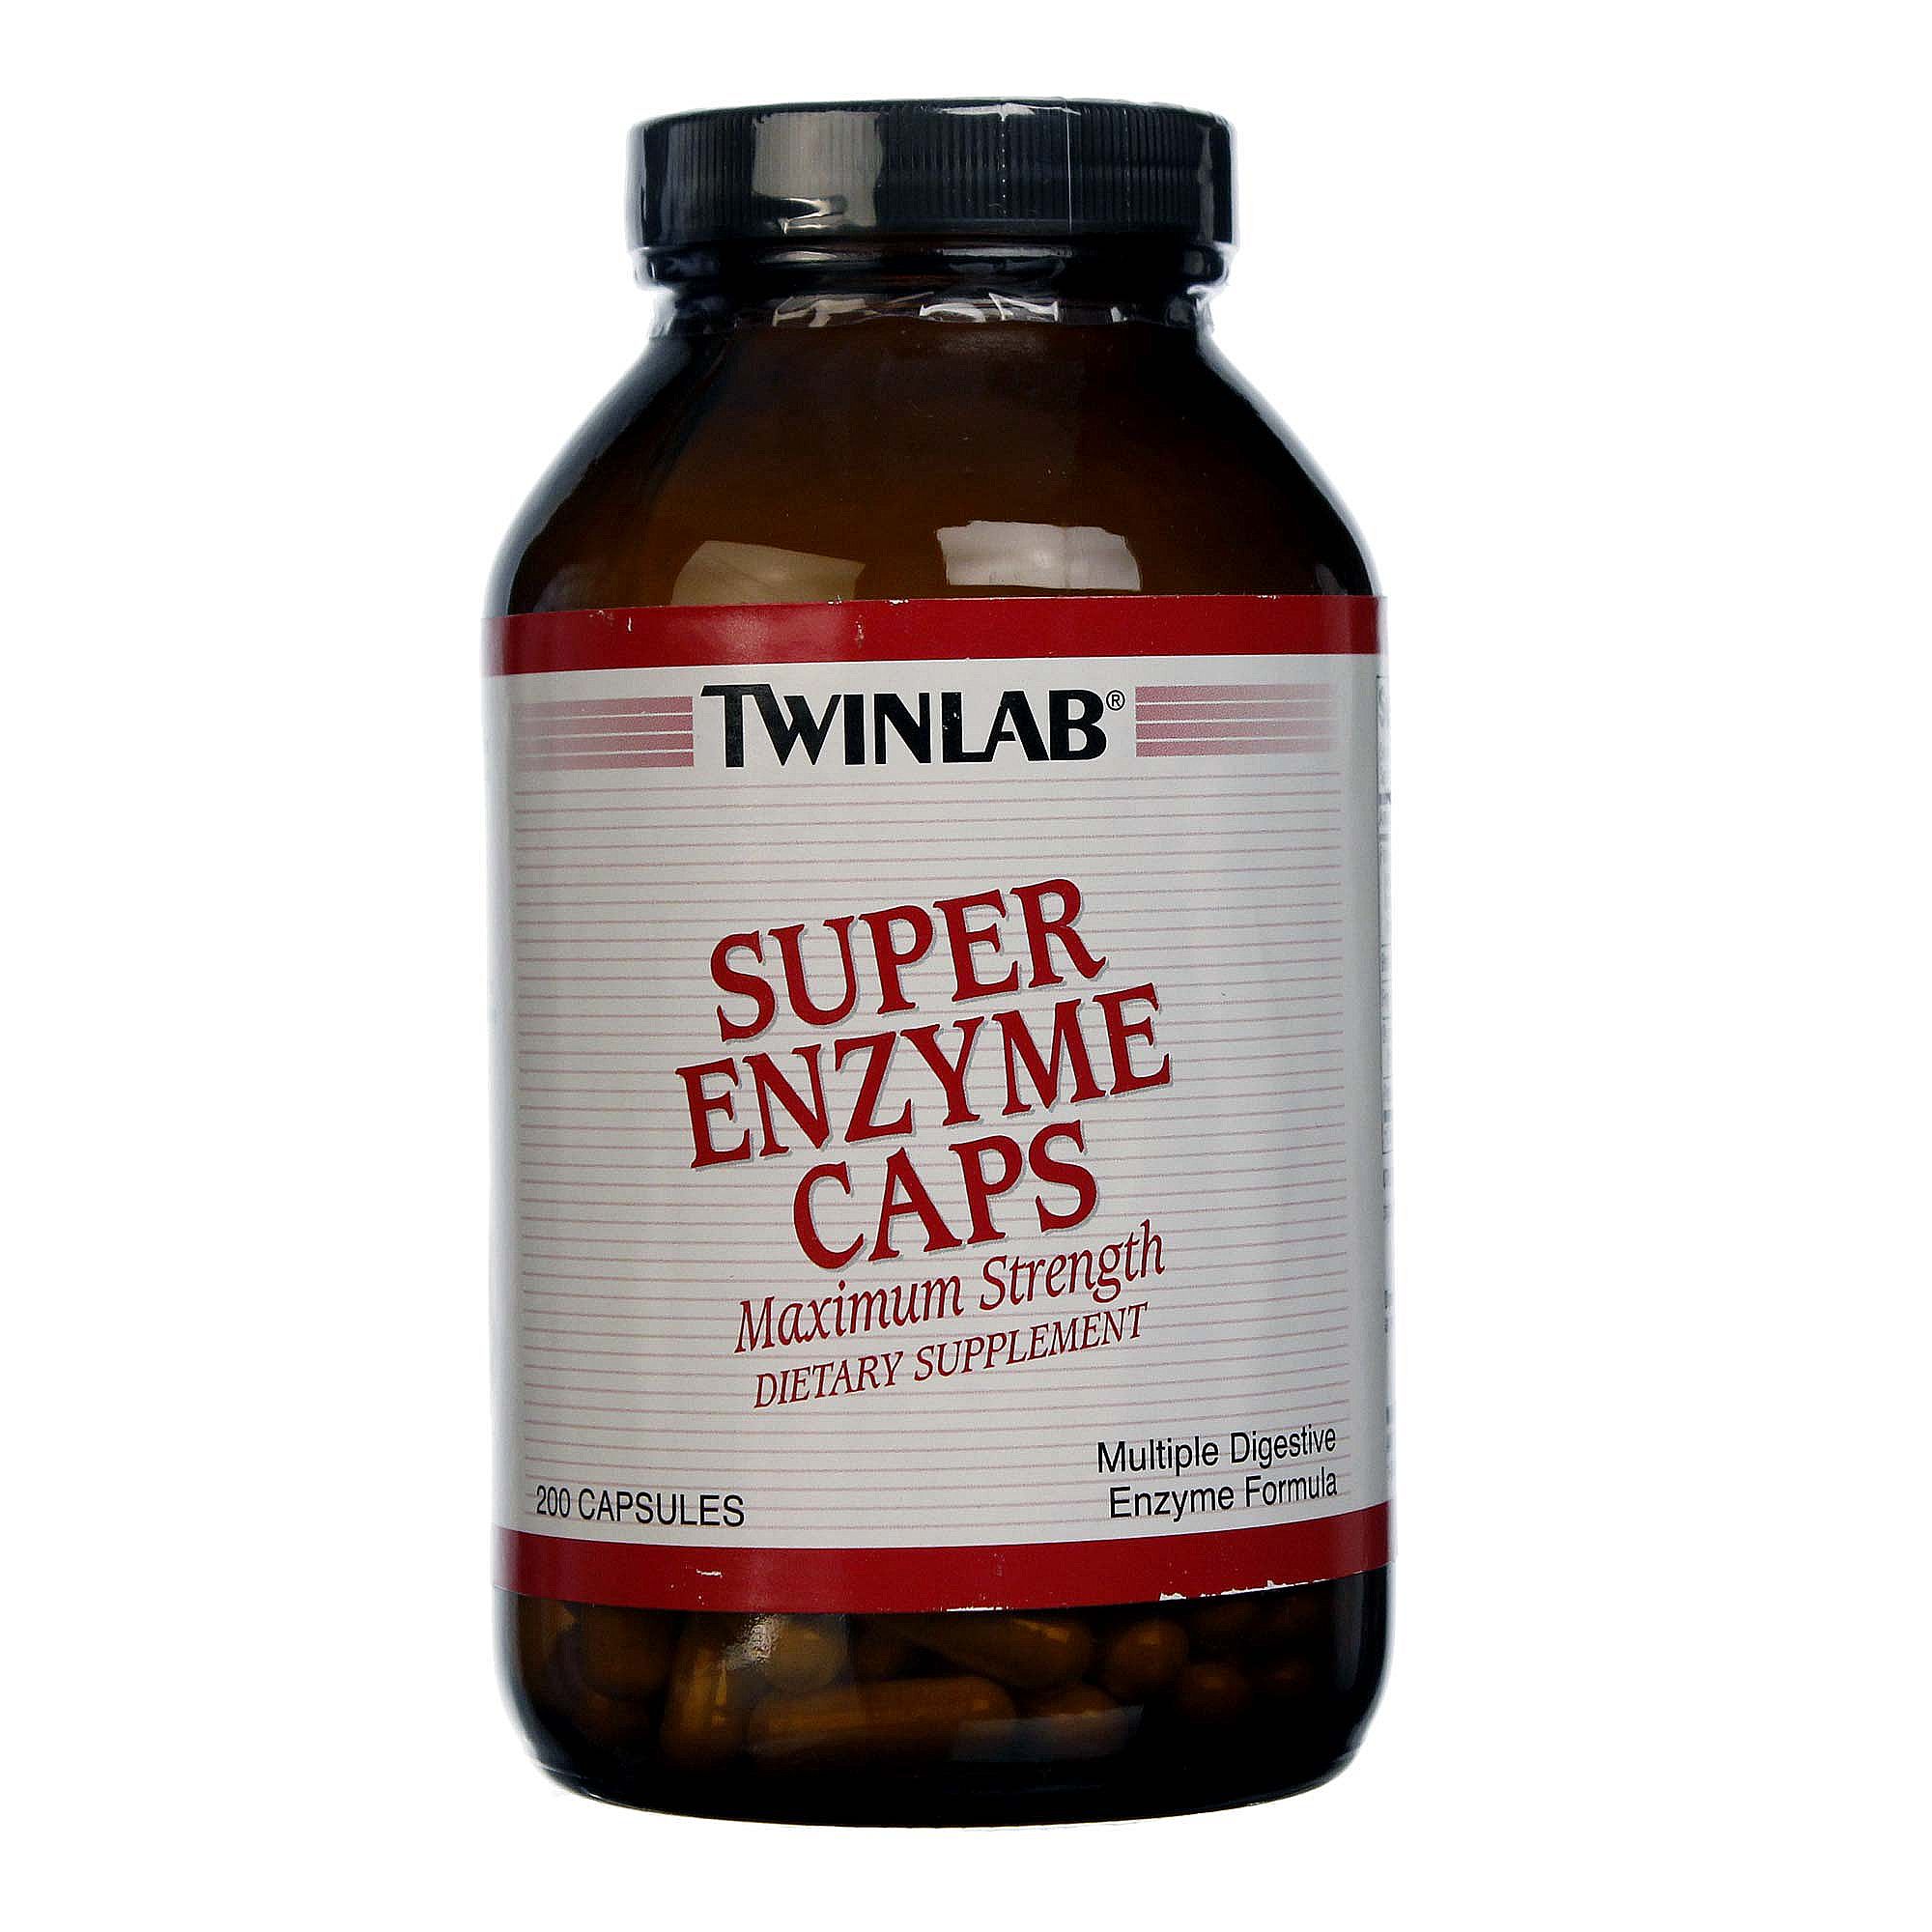 Twinlab Super Enzymes Caps - 200 Caps eVitamins.com